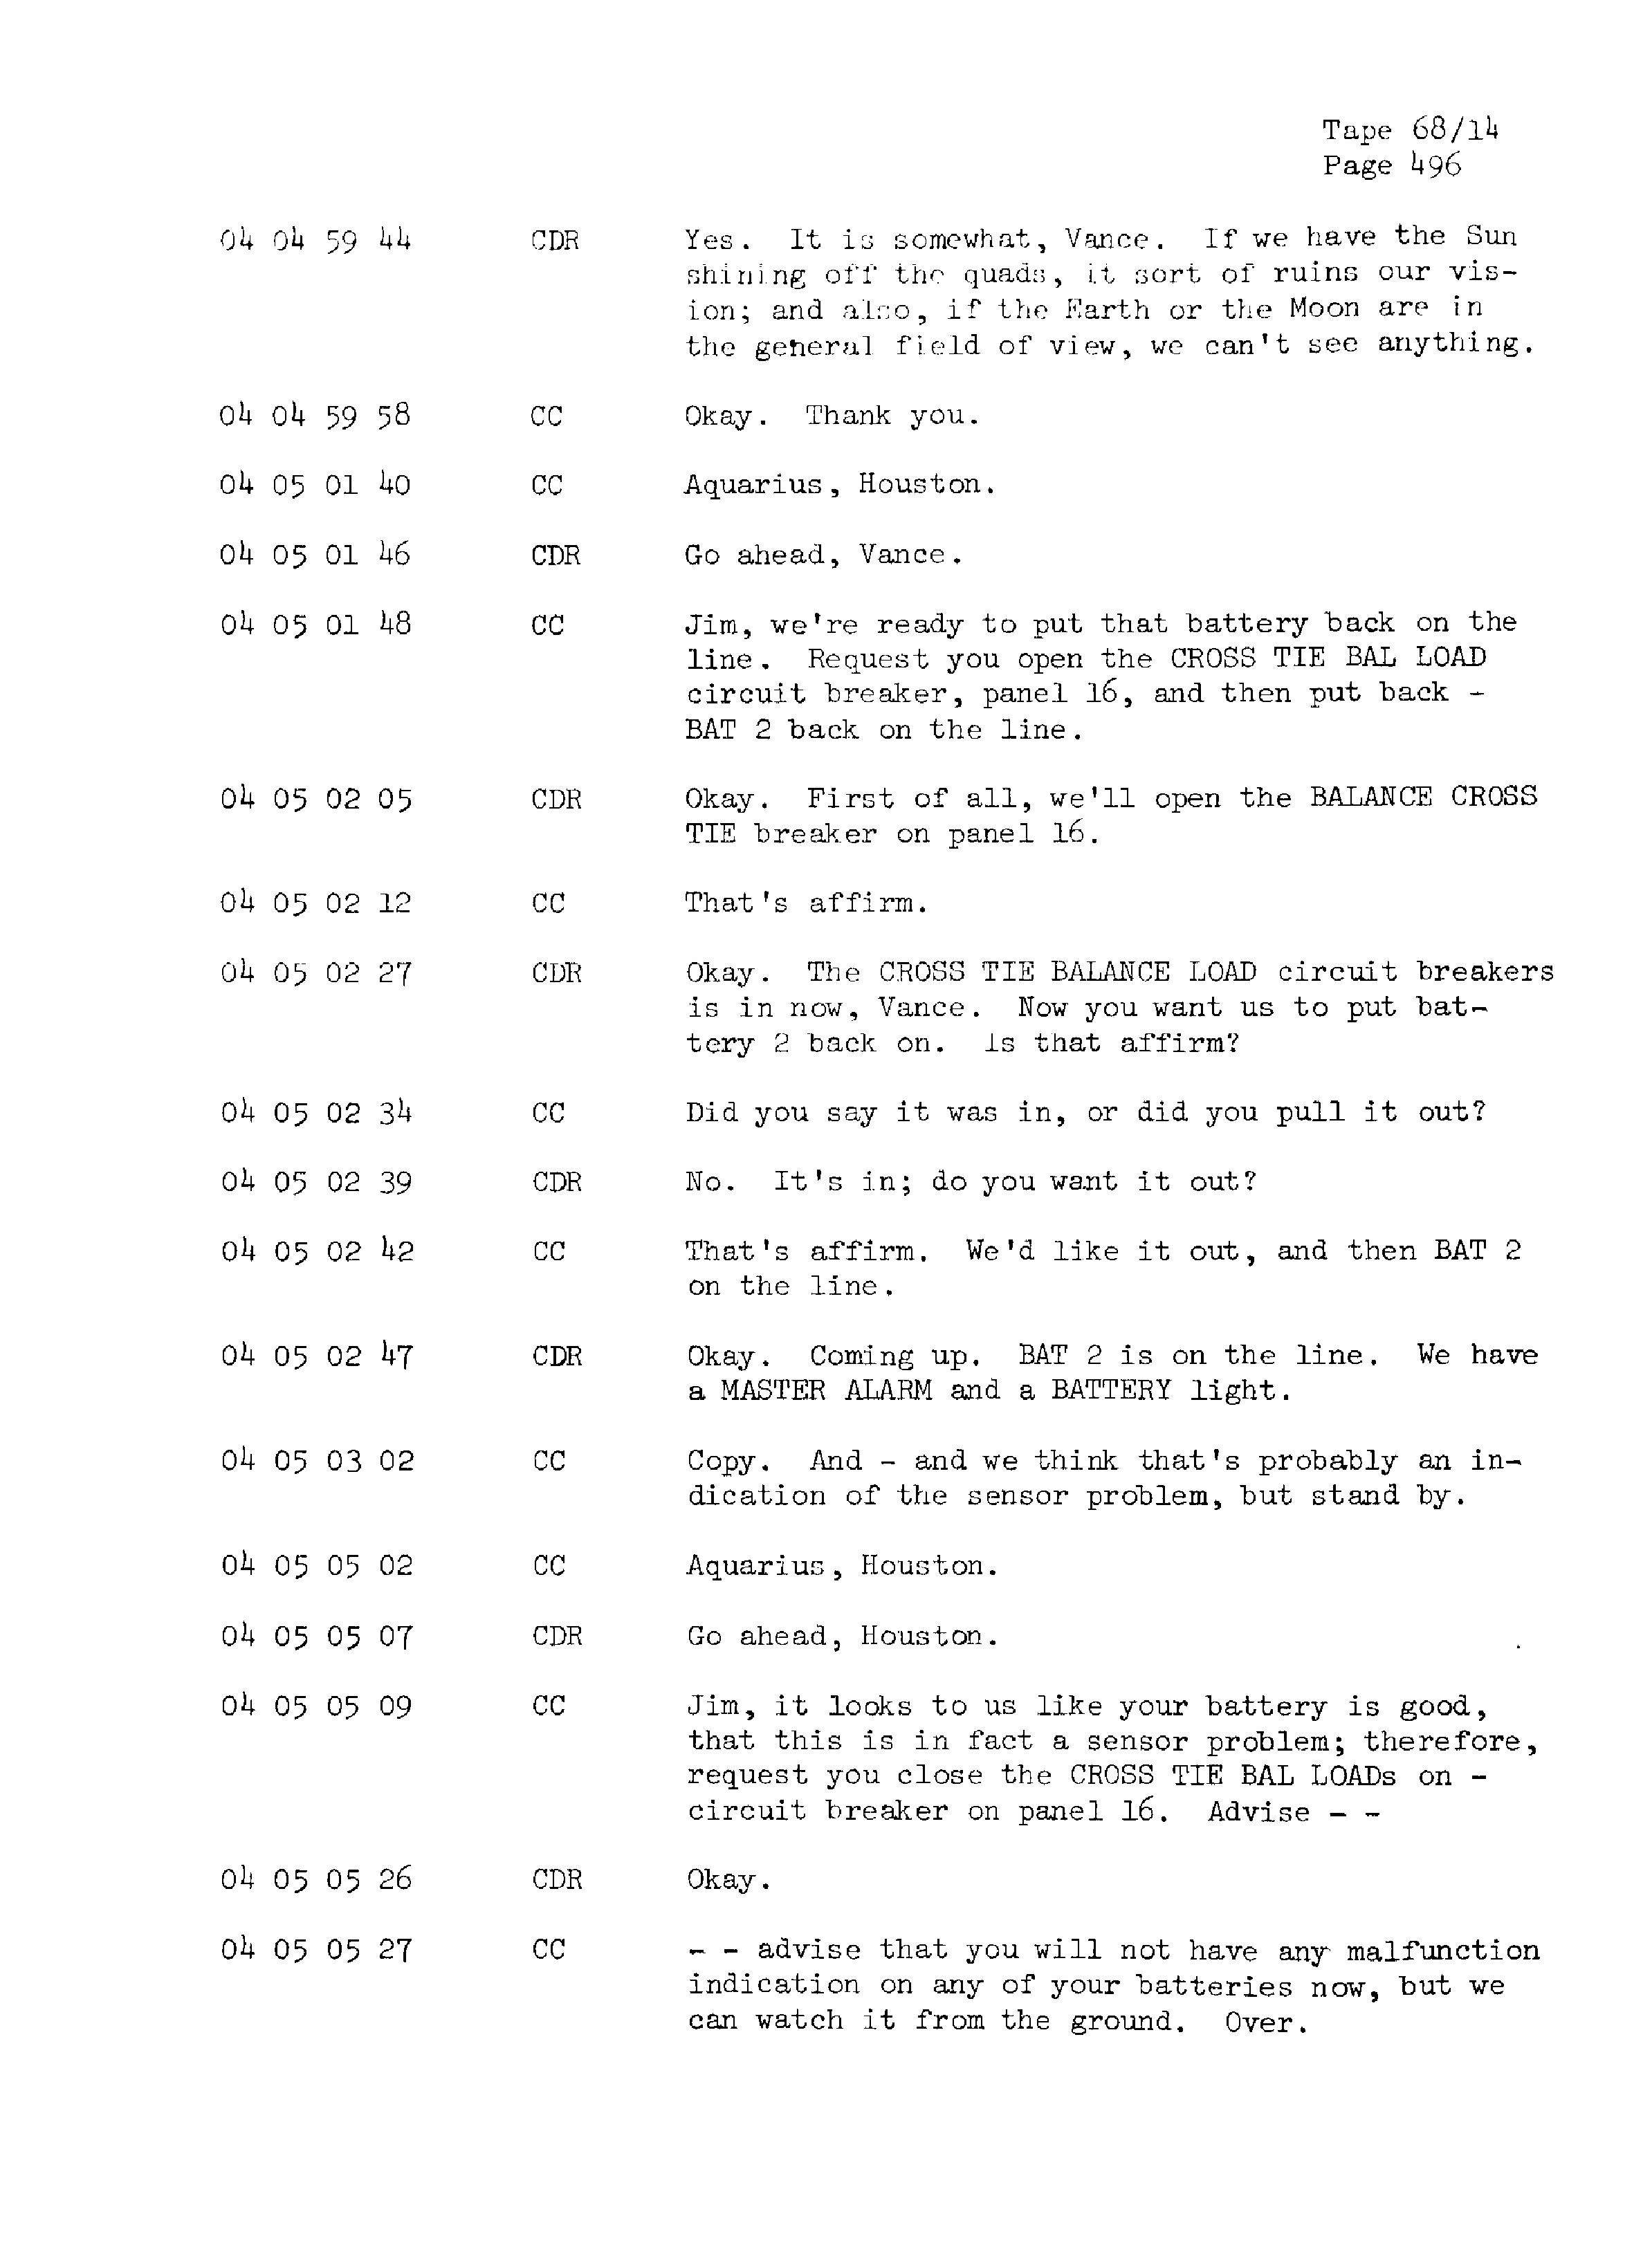 Page 503 of Apollo 13’s original transcript